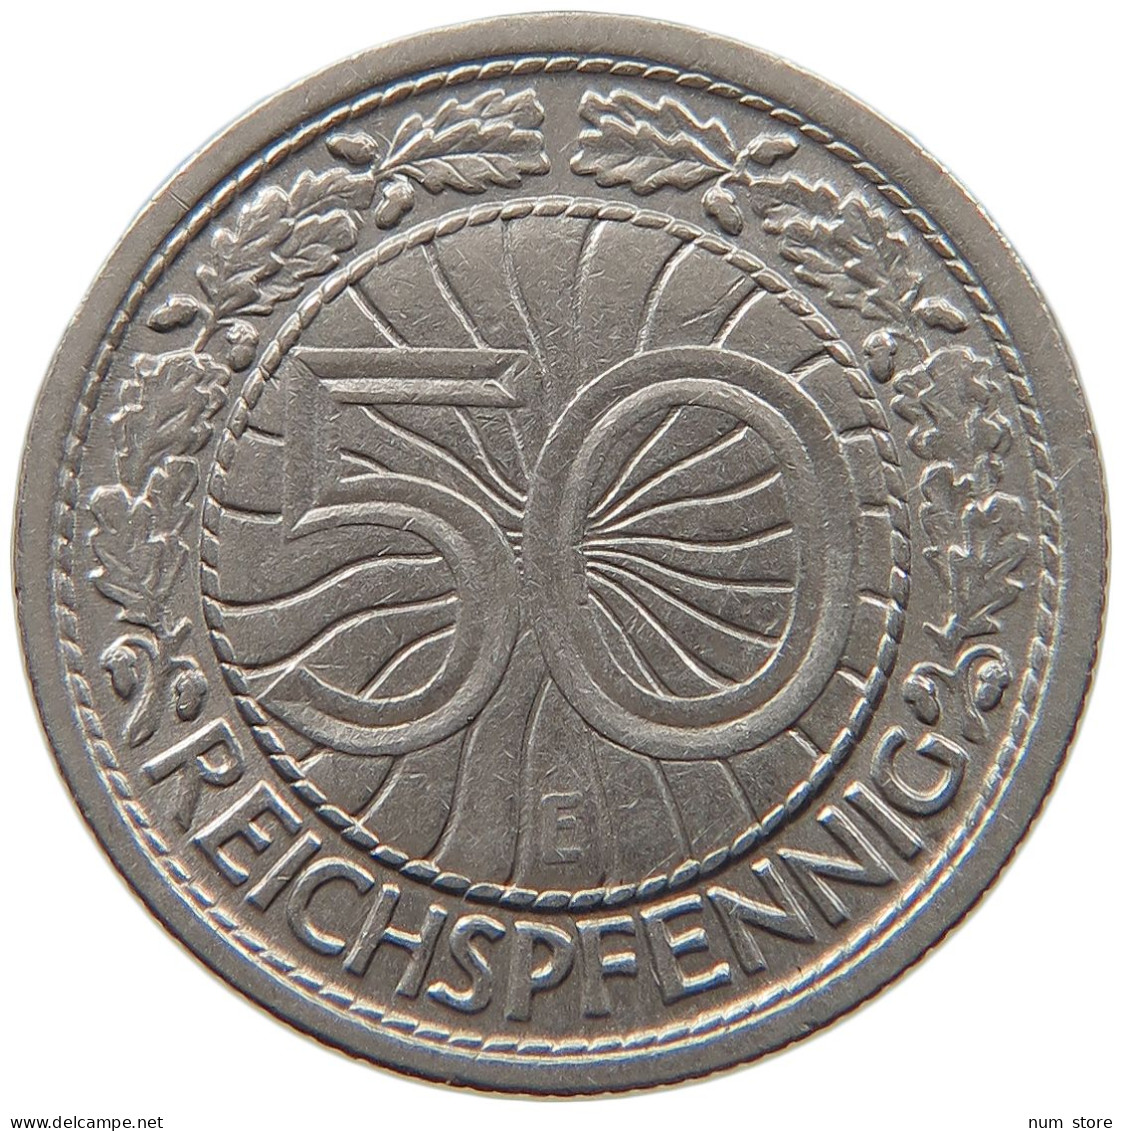 WEIMARER REPUBLIK 50 REICHSPFENNIG 1928 E  #MA 099480 - 50 Rentenpfennig & 50 Reichspfennig